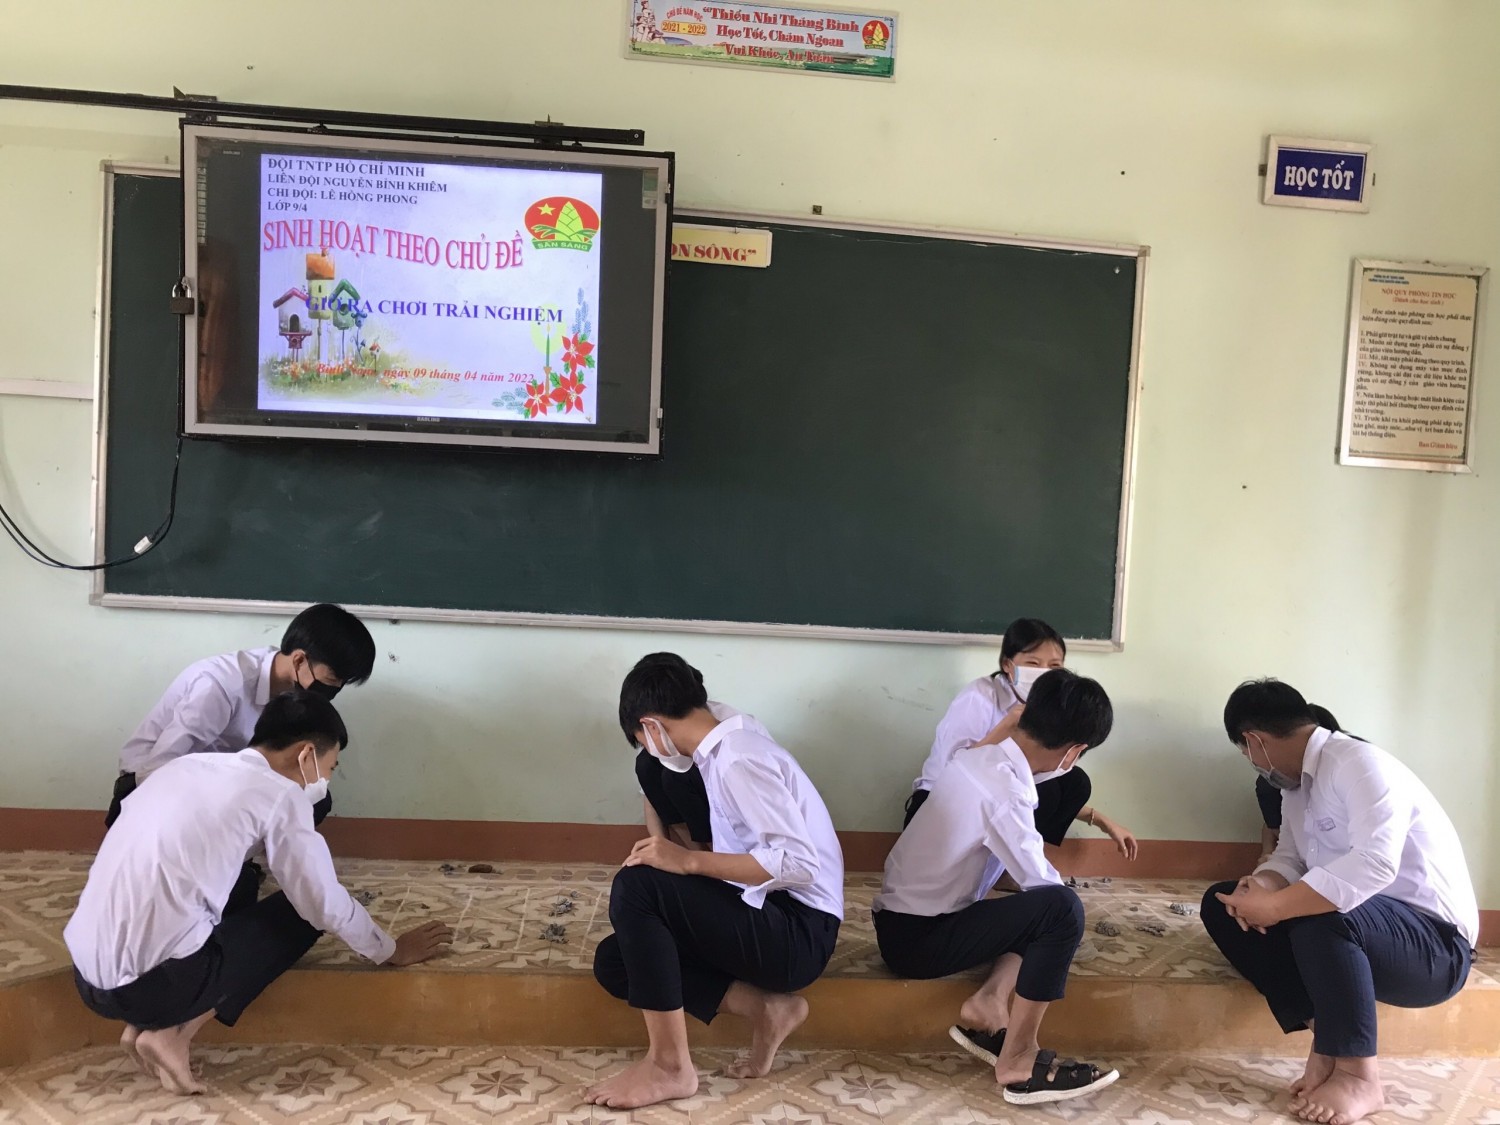 Liên đội THCS Nguyễn Bỉnh Khiêm tổ chức chuyên đề" Giờ ra chơi  trải nghiệm" cho học sinh toàn trường.